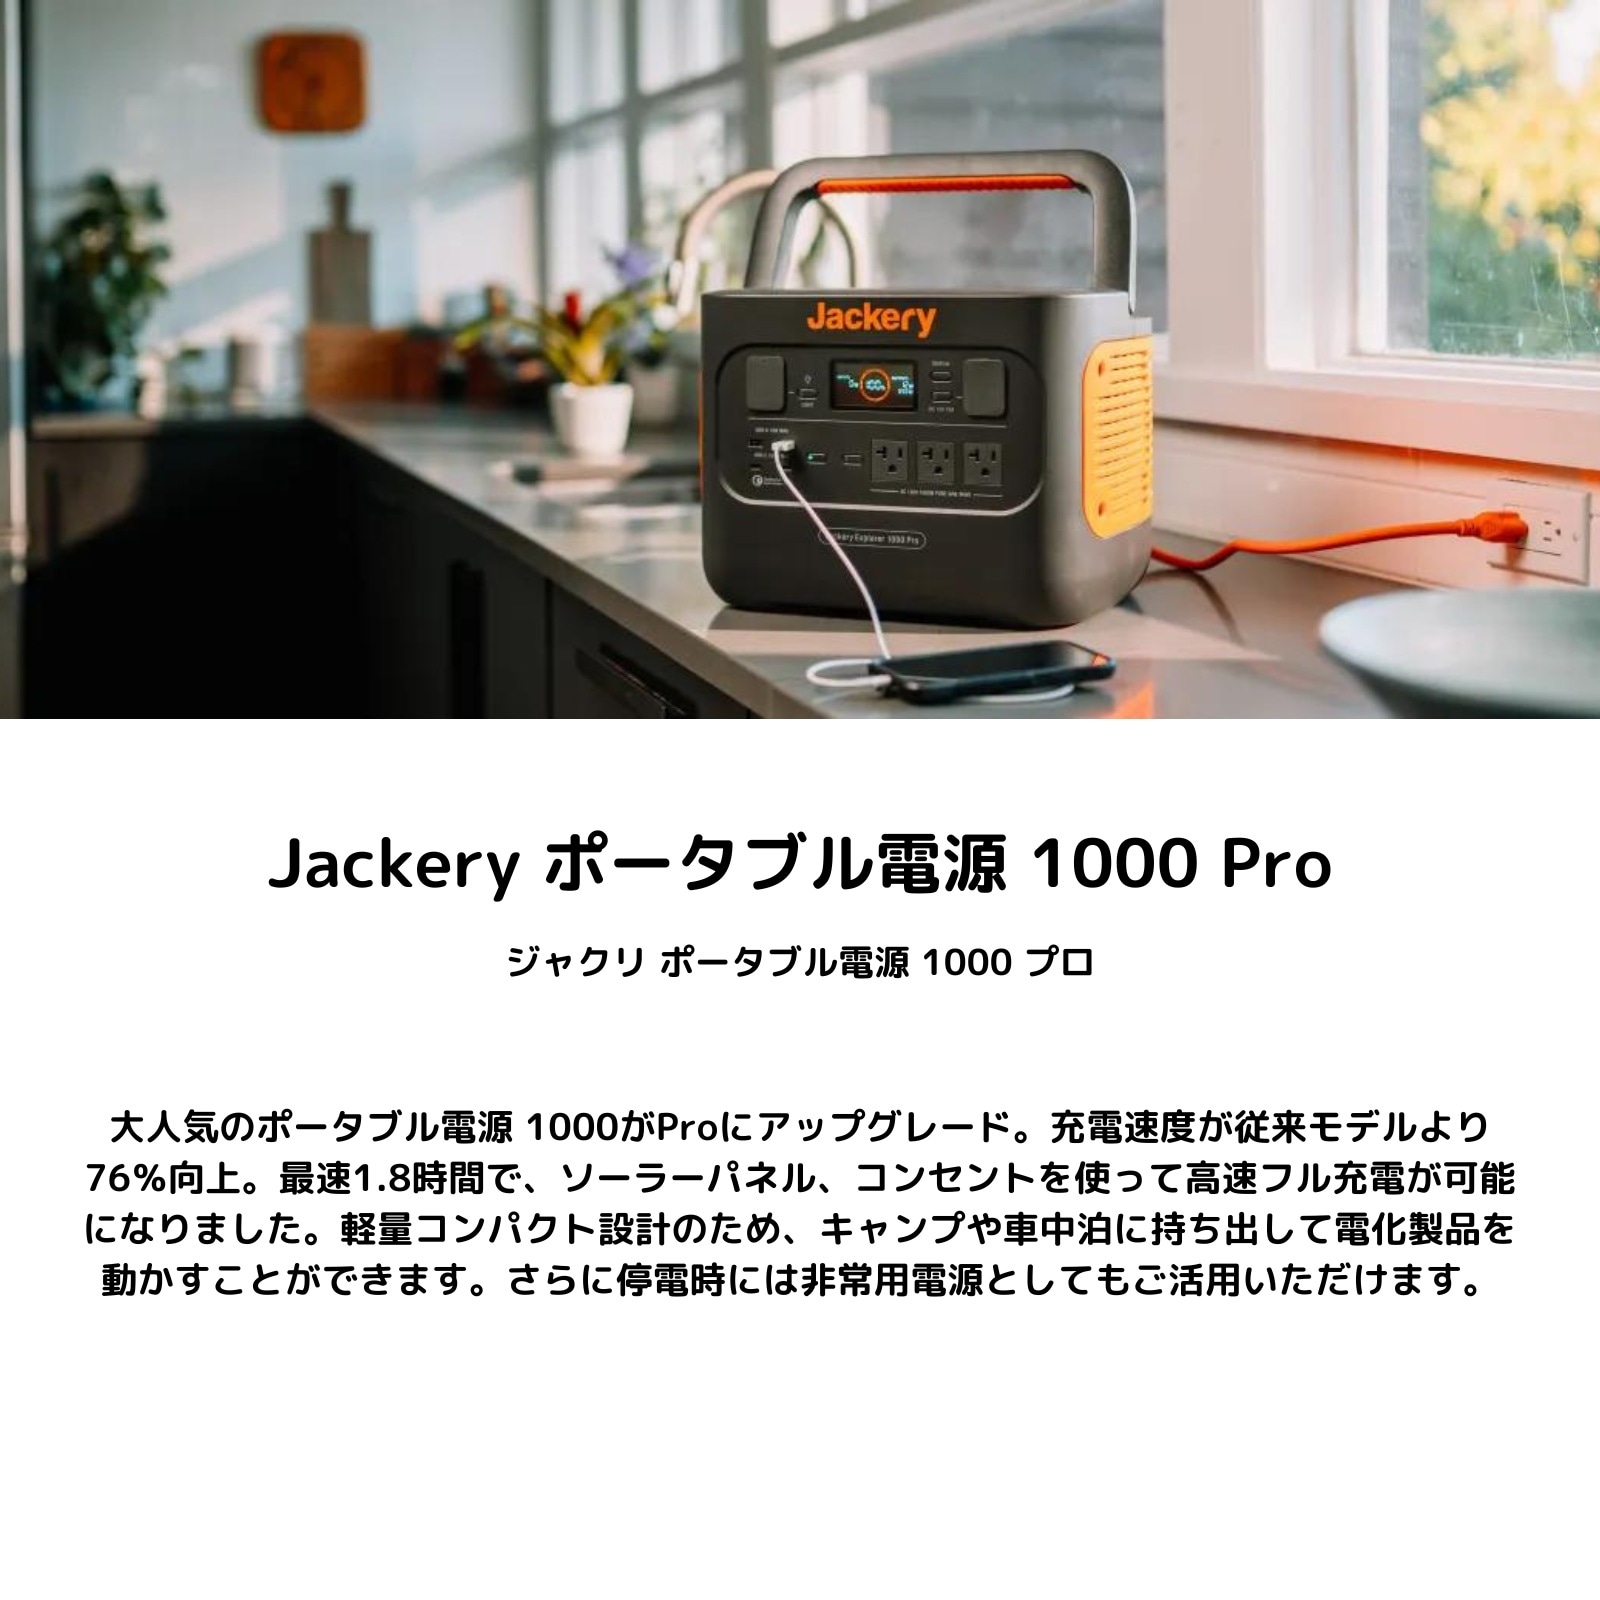 Jackery ジャクリ ポータブル電源 1000 Pro JE-1000B バッテリー 大